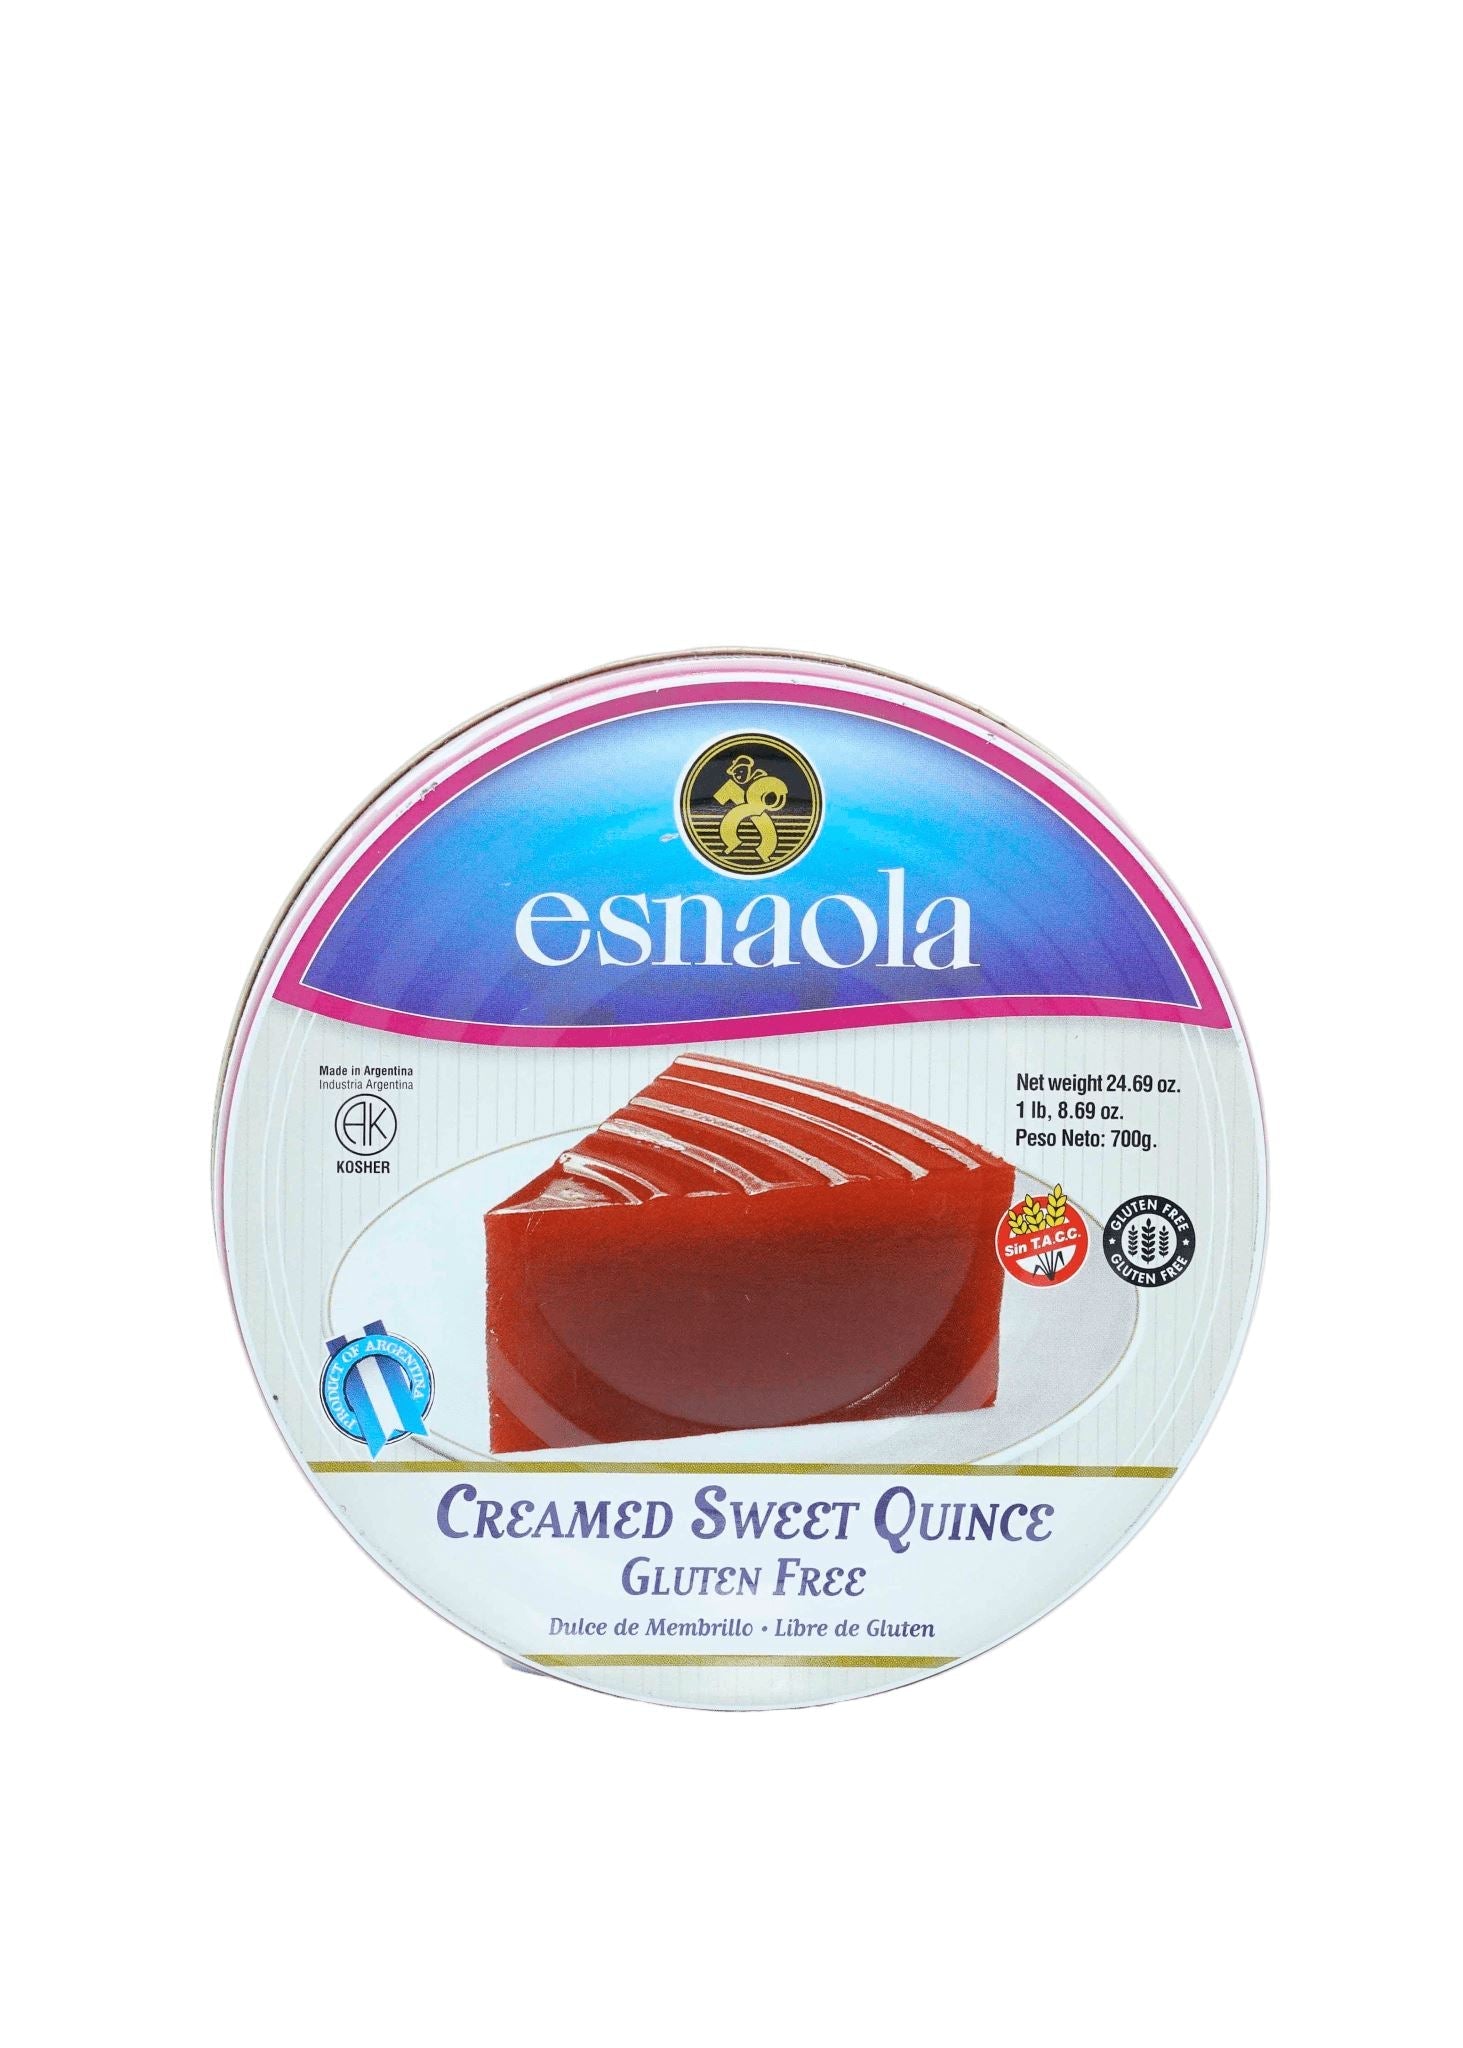 Esnaola Creamed Sweet Quince (Dulce de Membrillo) 700g Miscellaneous Esnaola 